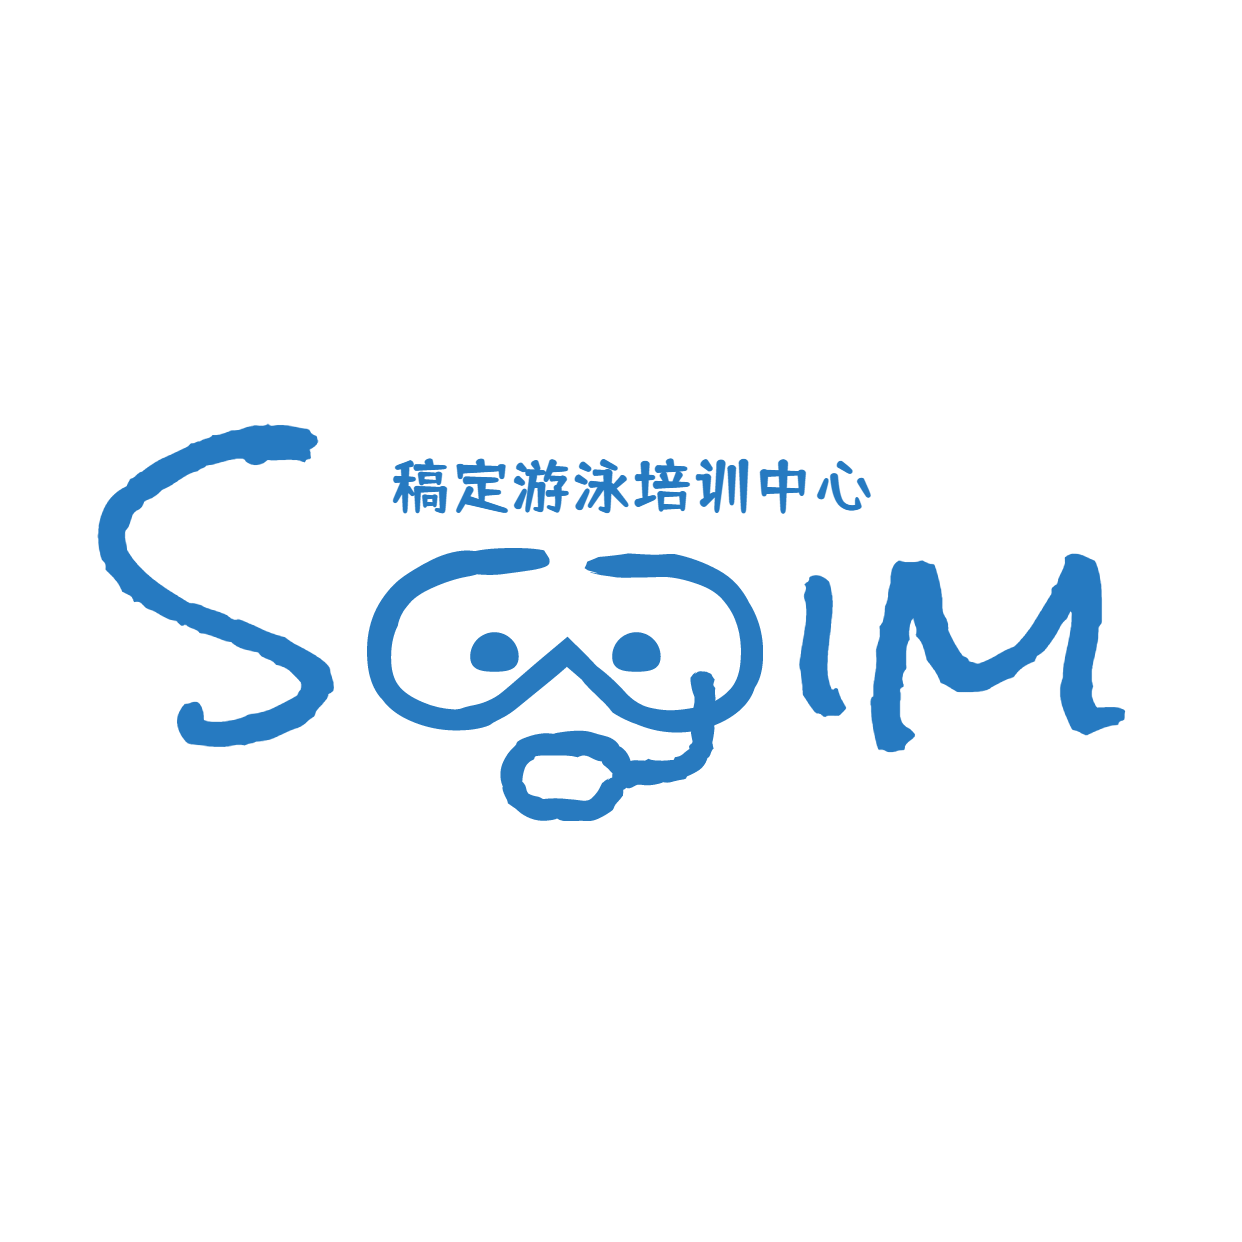 教育培训机构游泳馆店标logo